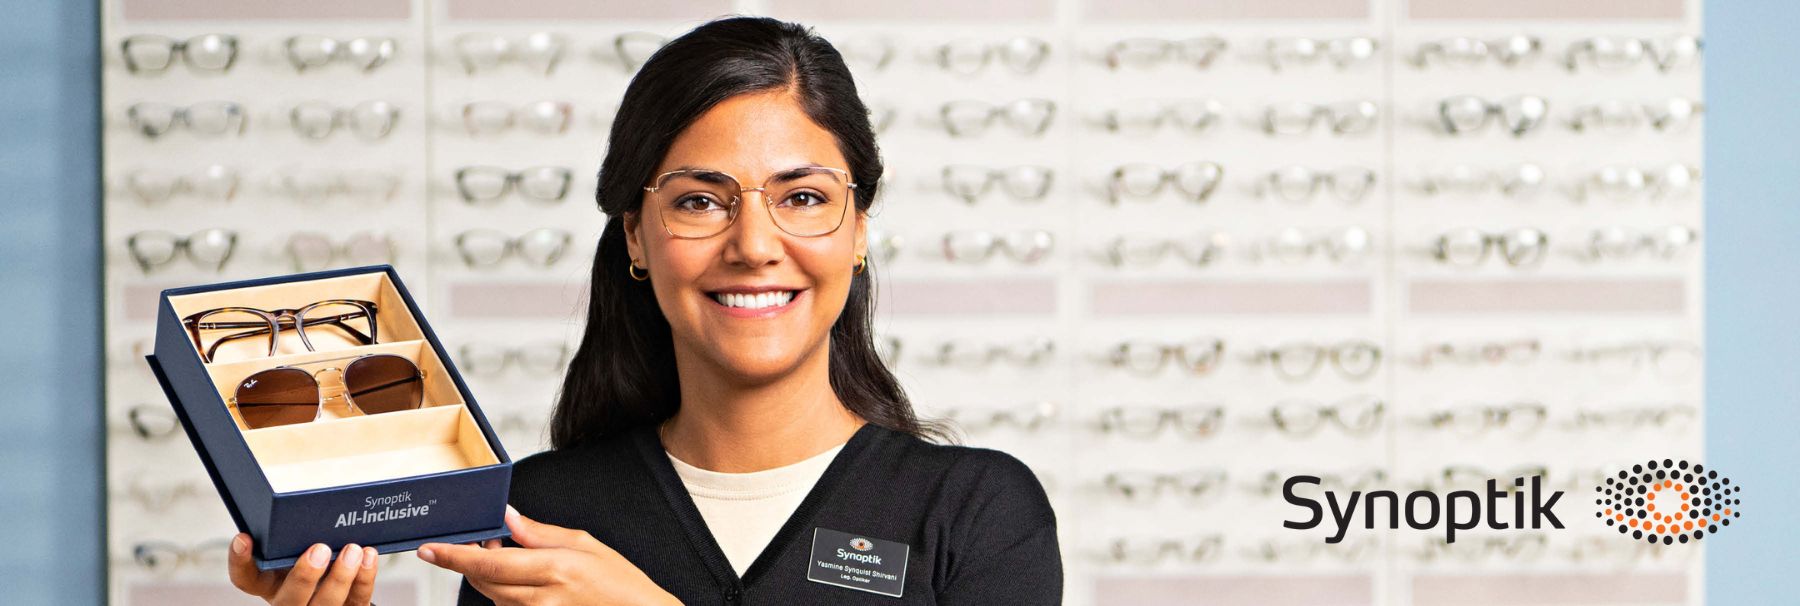 25% rabatt på Synoptiks nya, smarta glasögonabonnemang